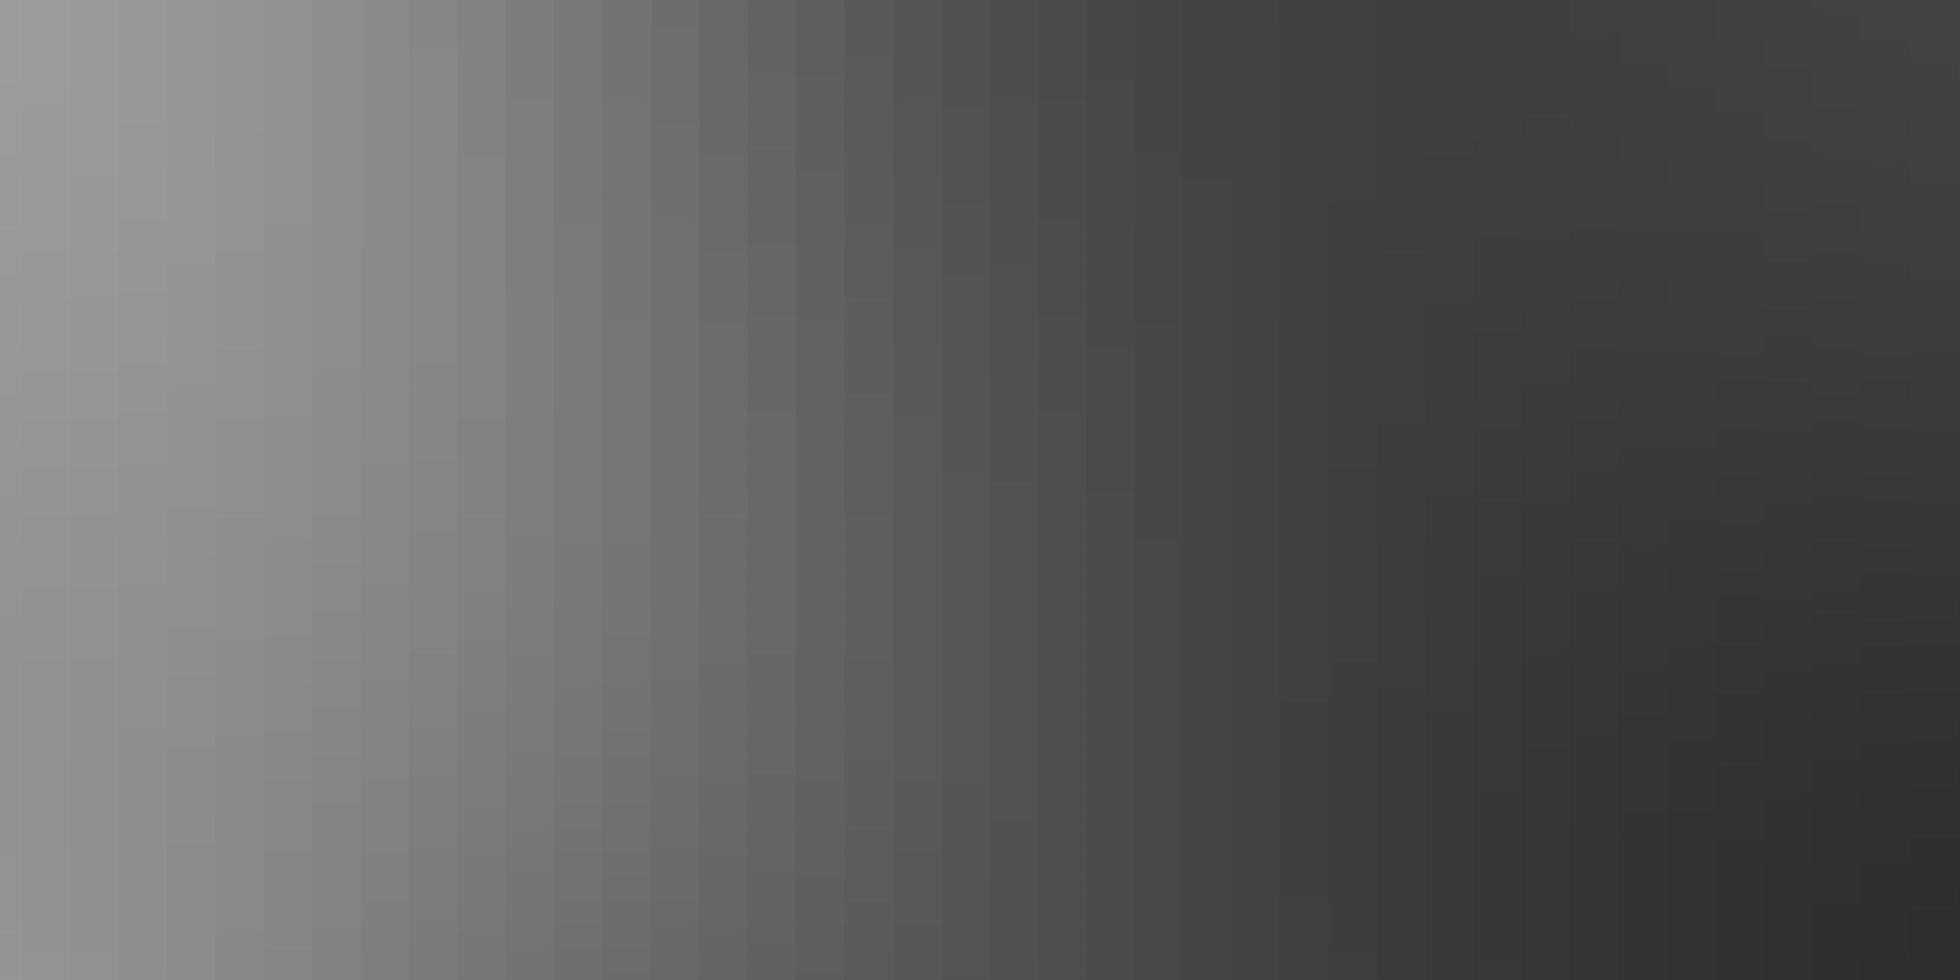 telón de fondo de vector gris claro con rectángulos.